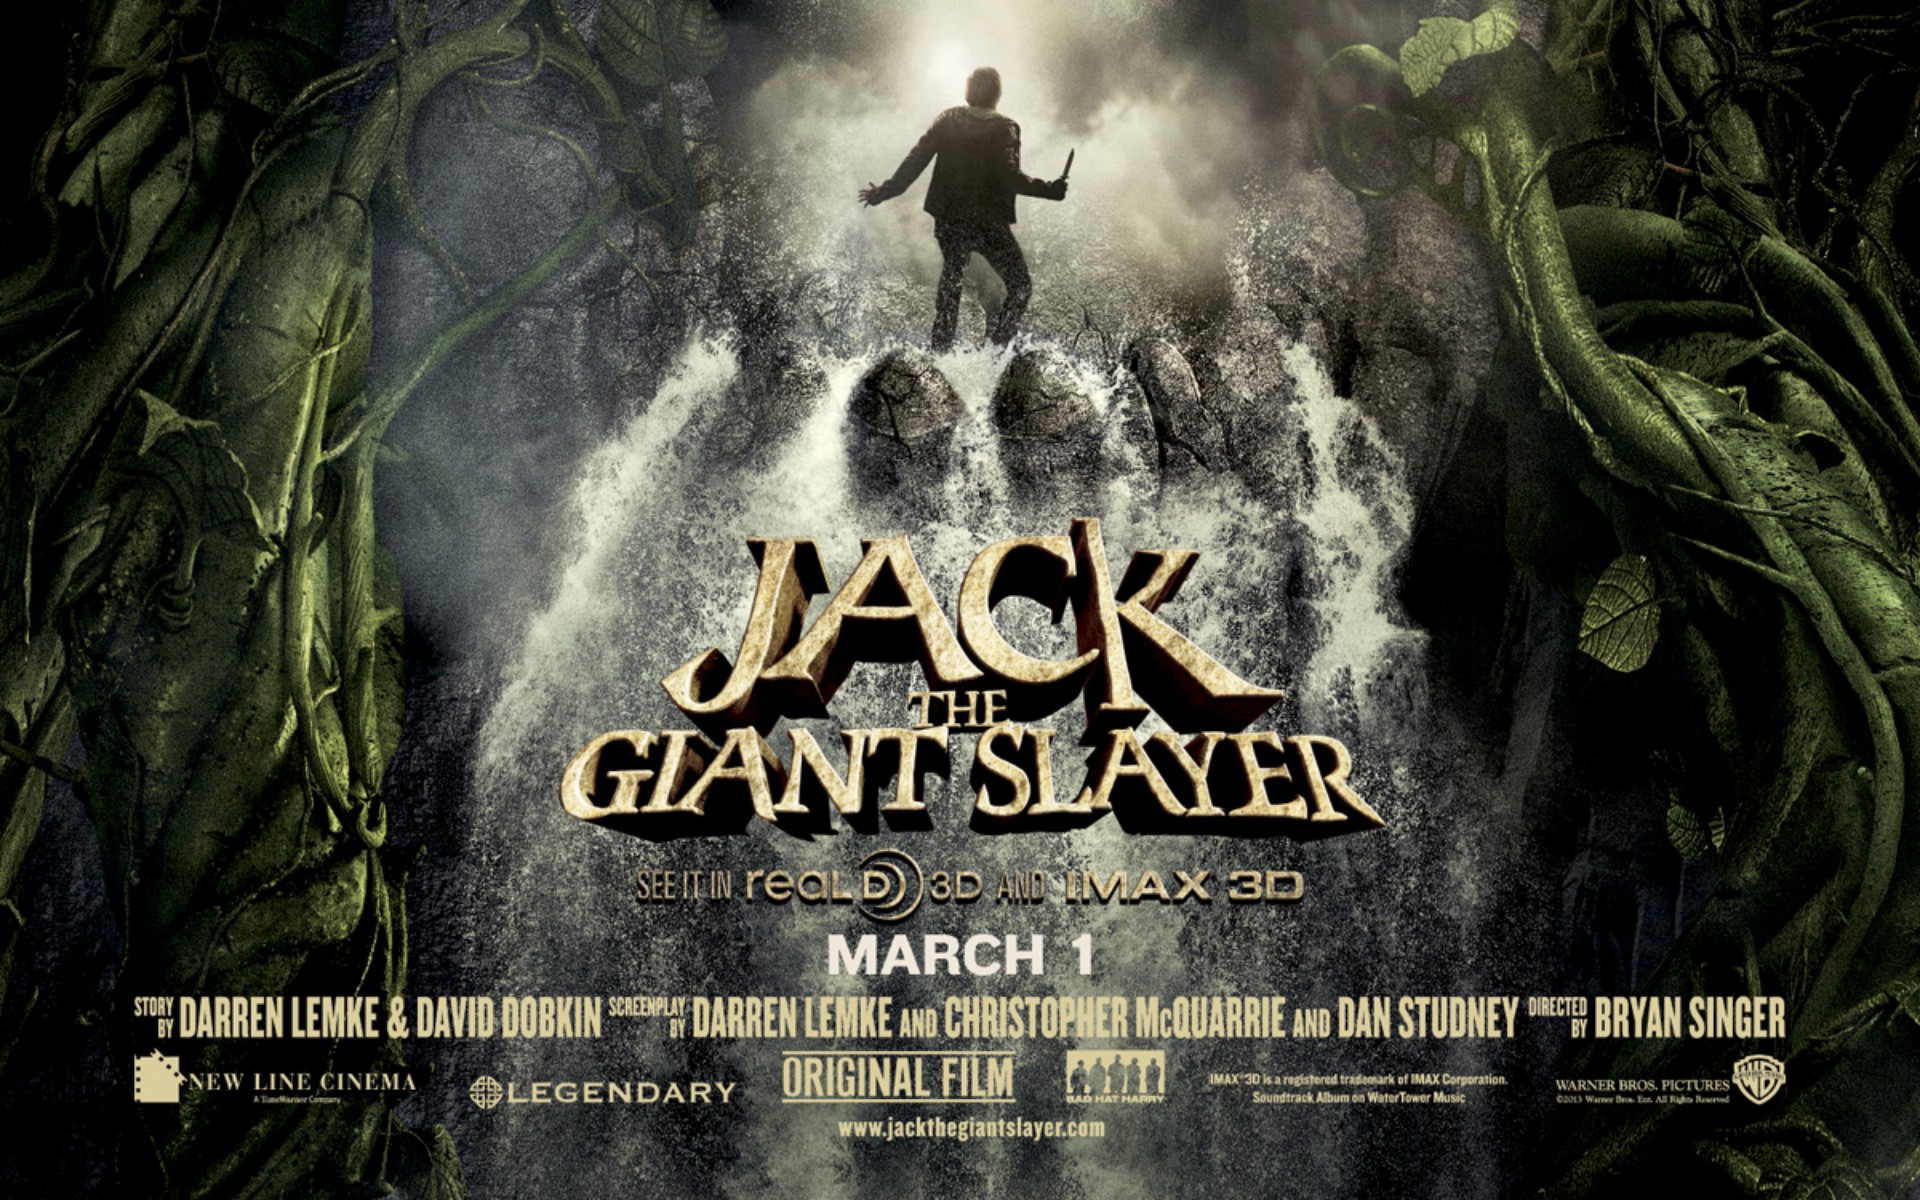 Jack Giant Slayer